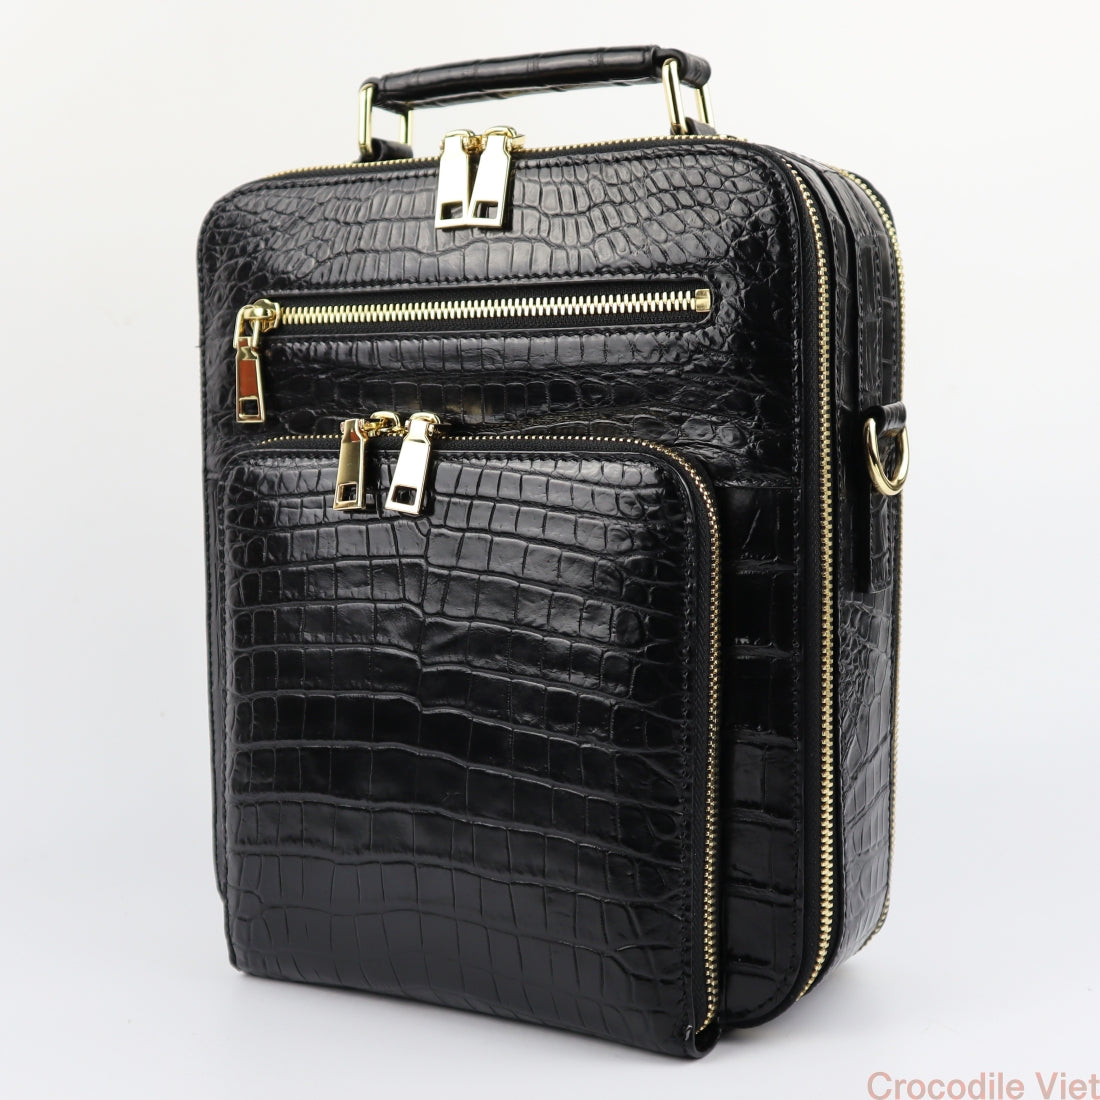 Alligator Leather Briefcase Laptop Bag Shoulder Business Bag for Men